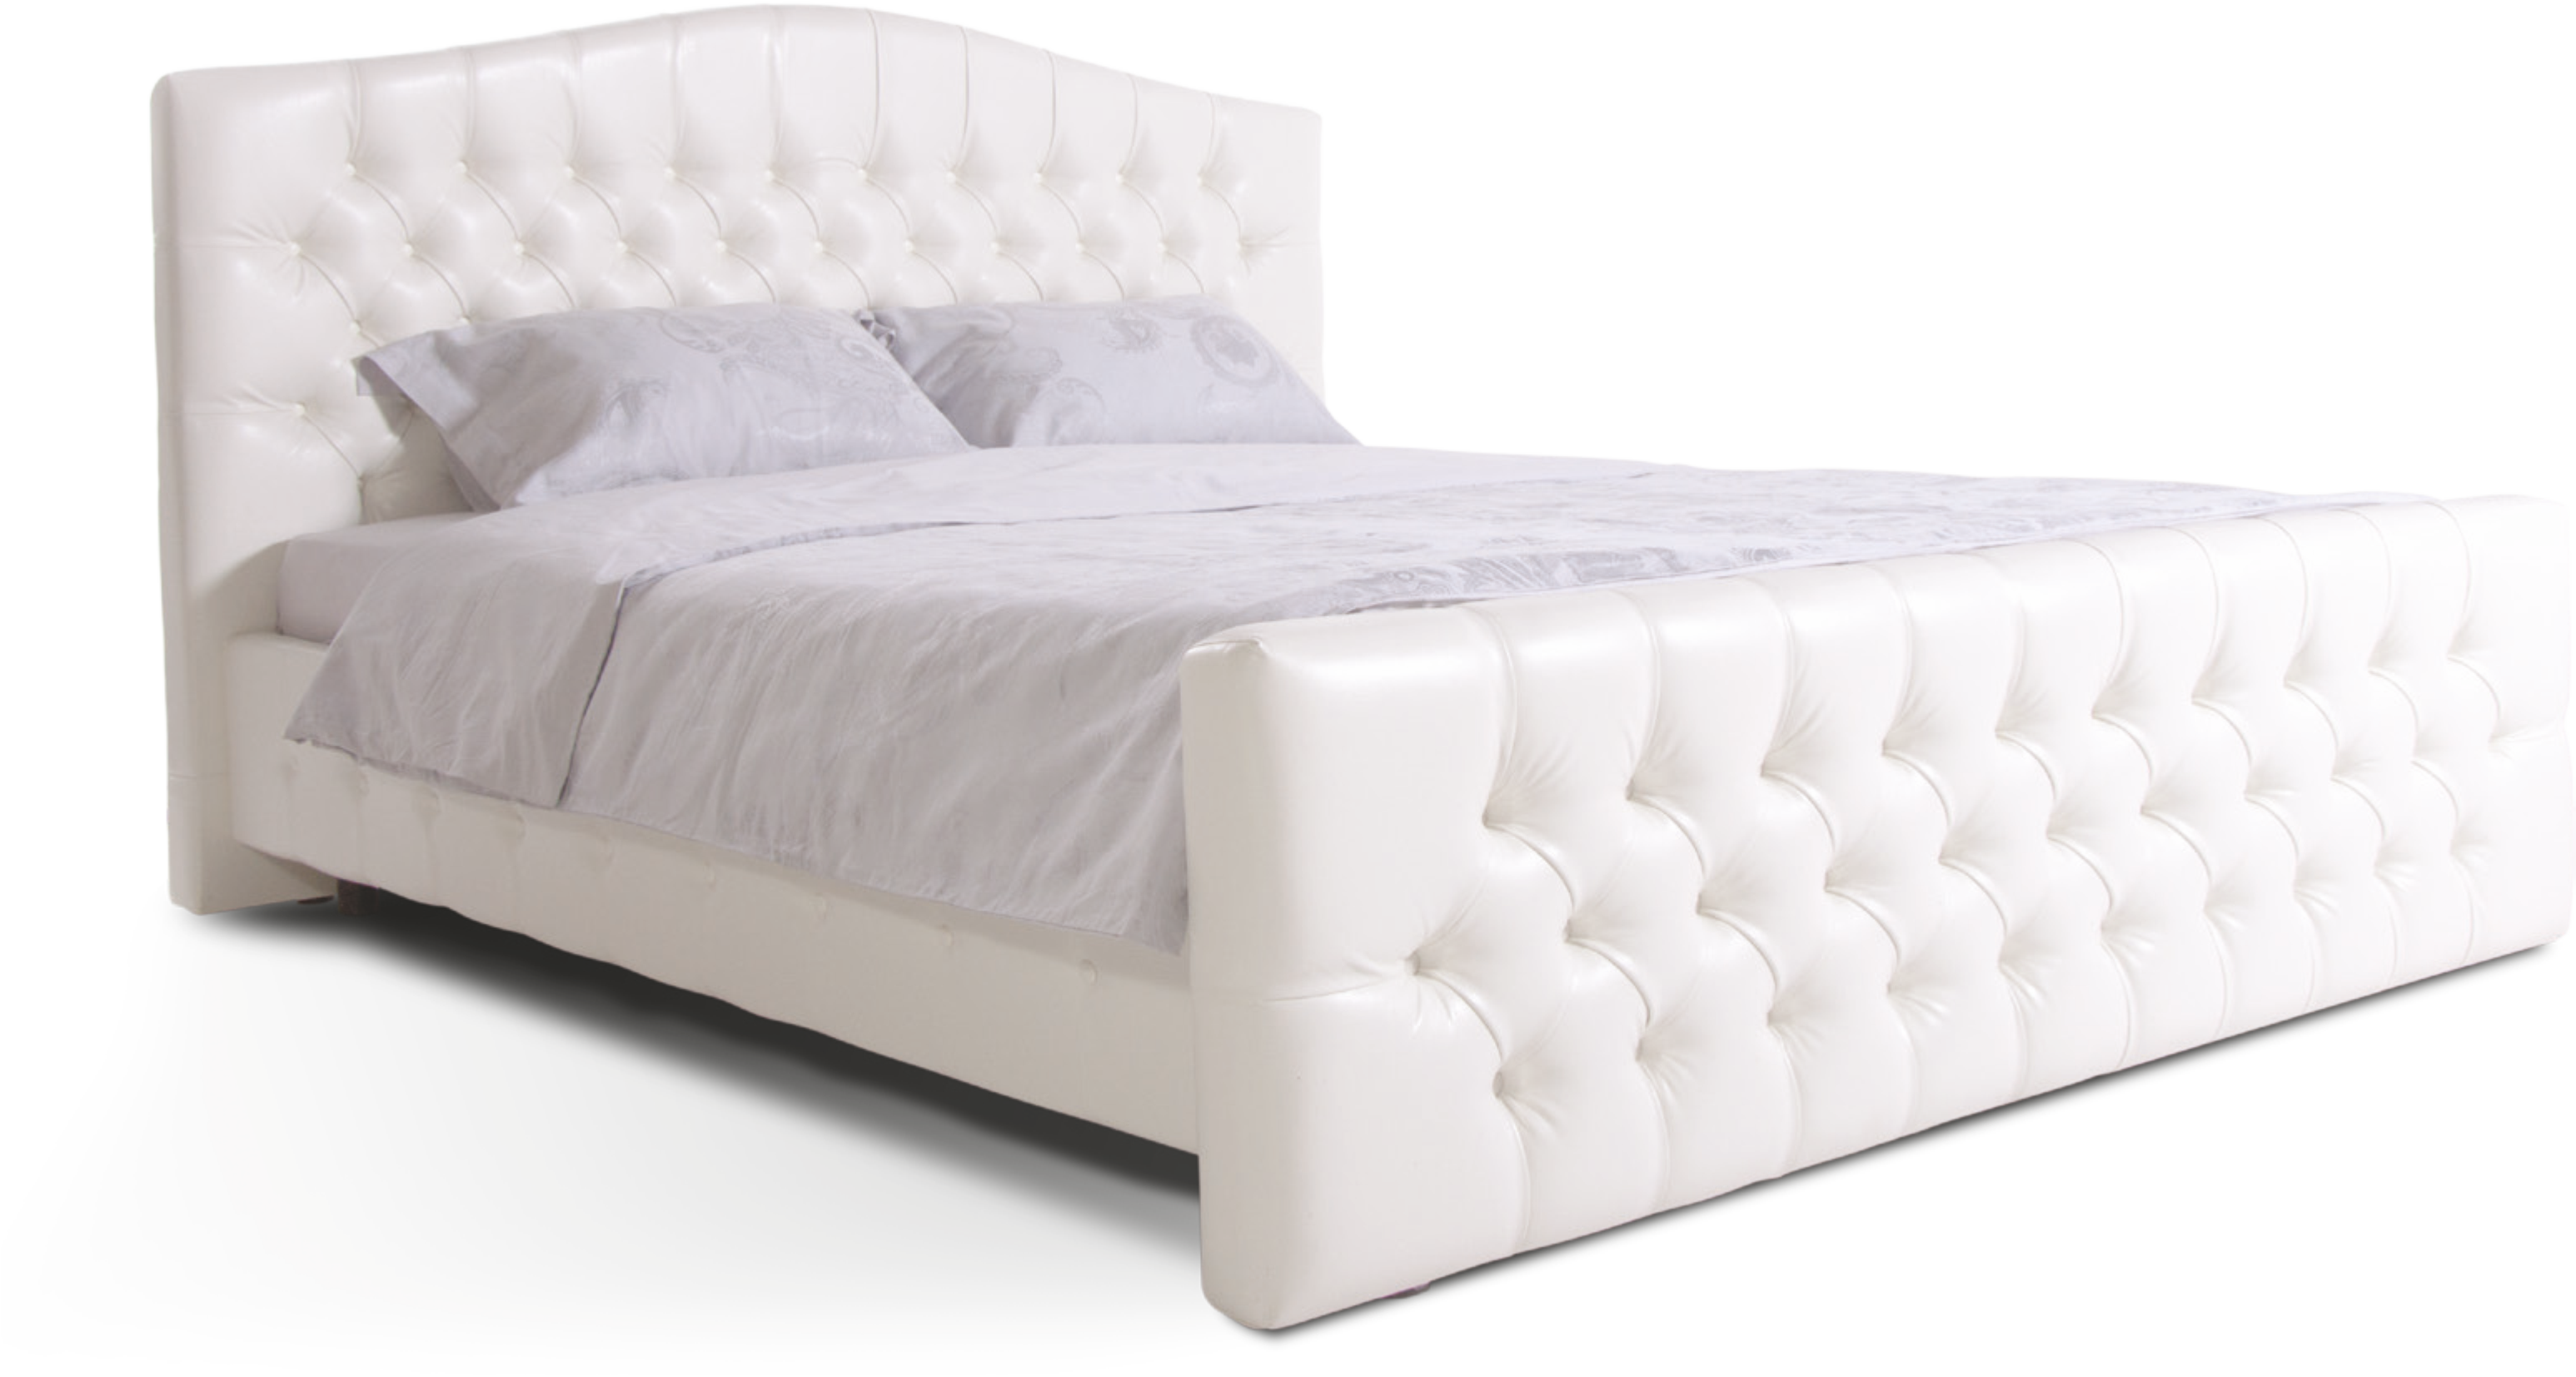 clipart bed mattress